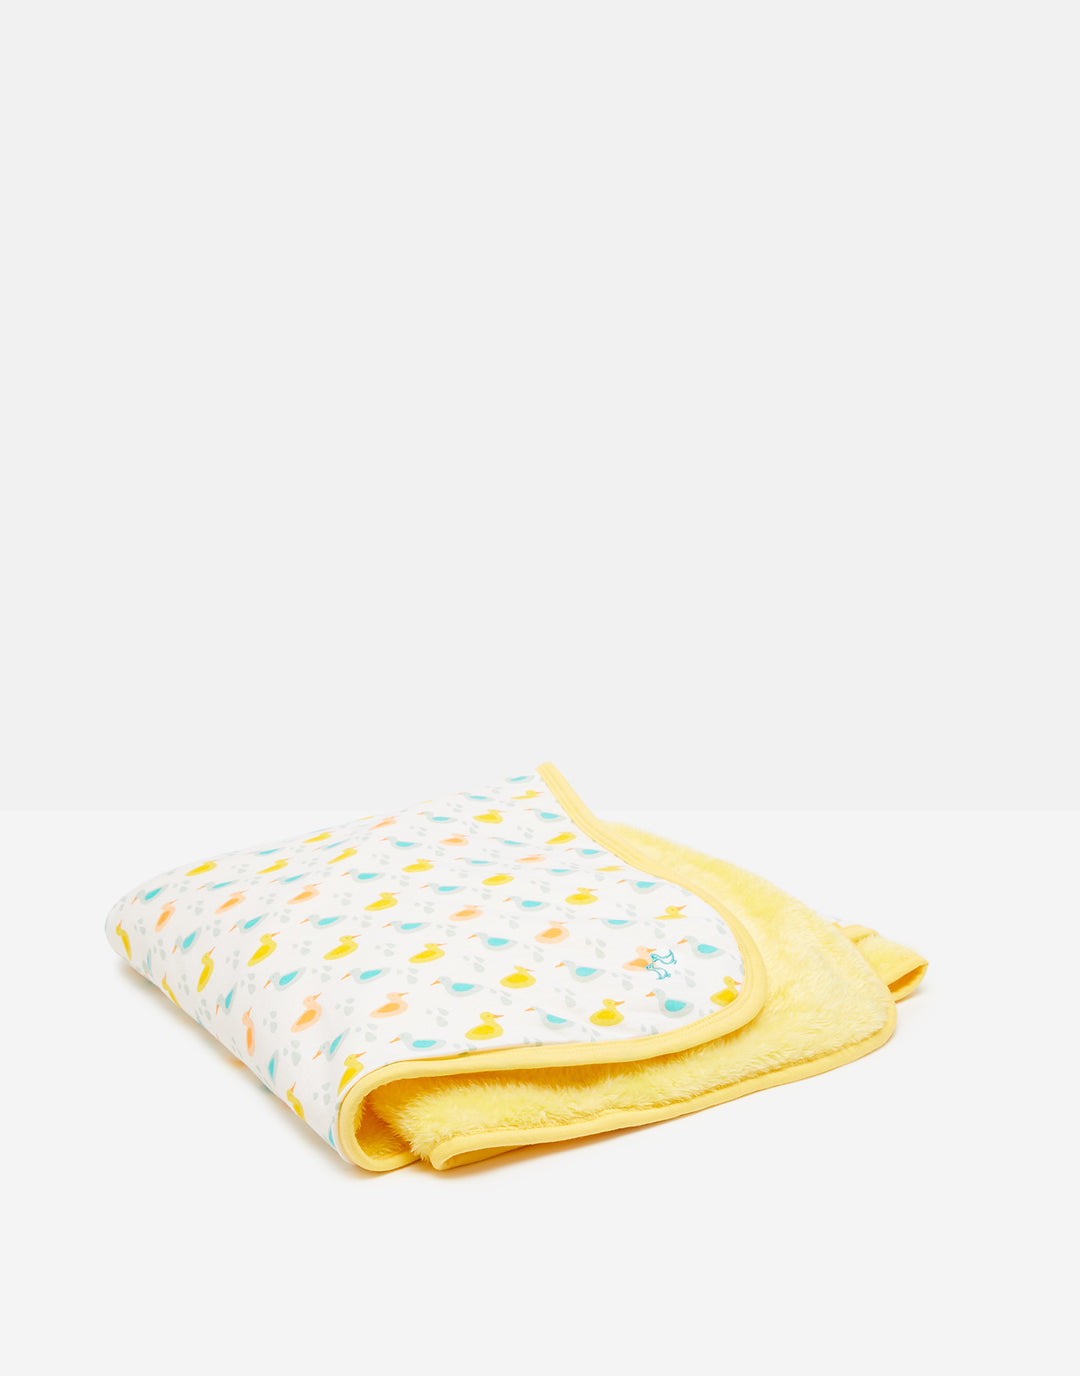 Little Ducks Soft Baby Blanket